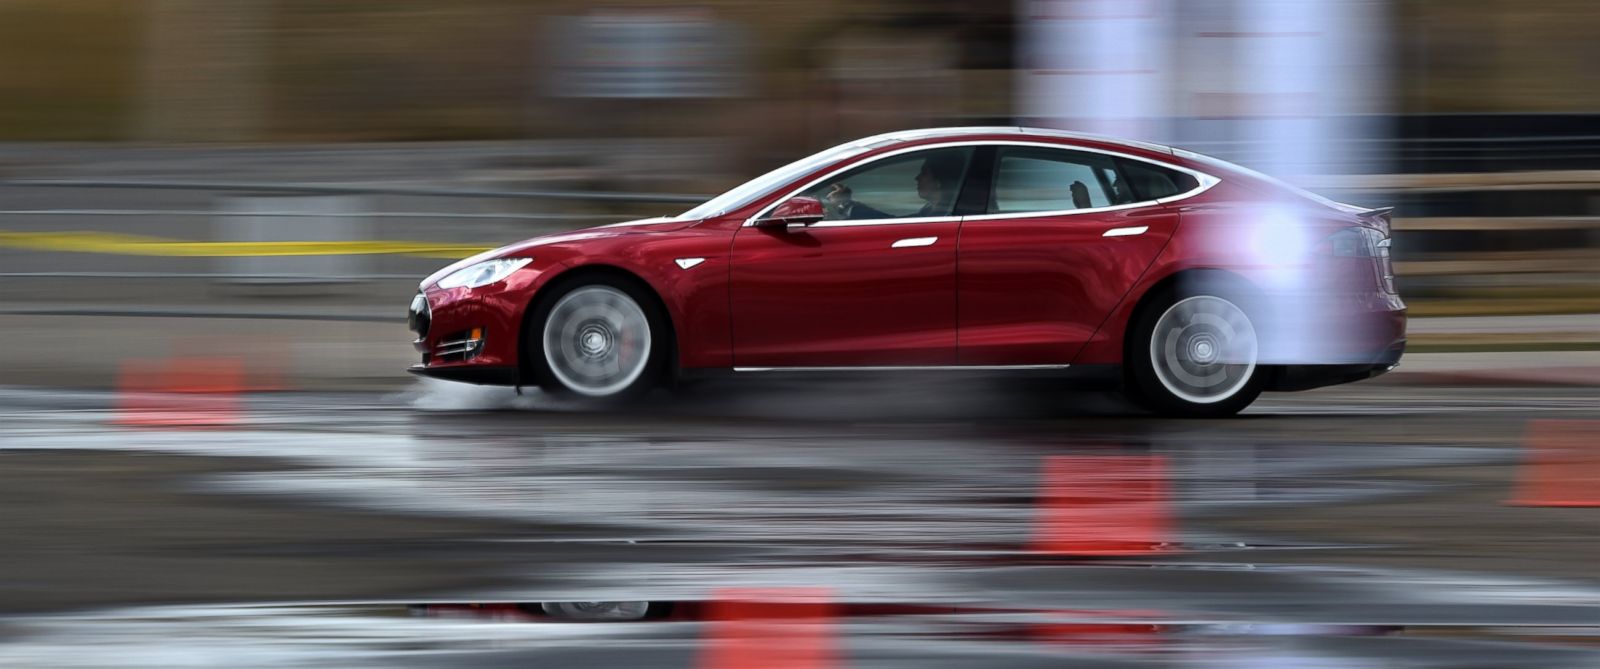 Владелец Tesla Model S утверждает, что автопилот его электромобиля спас пешехода от смерти - 1